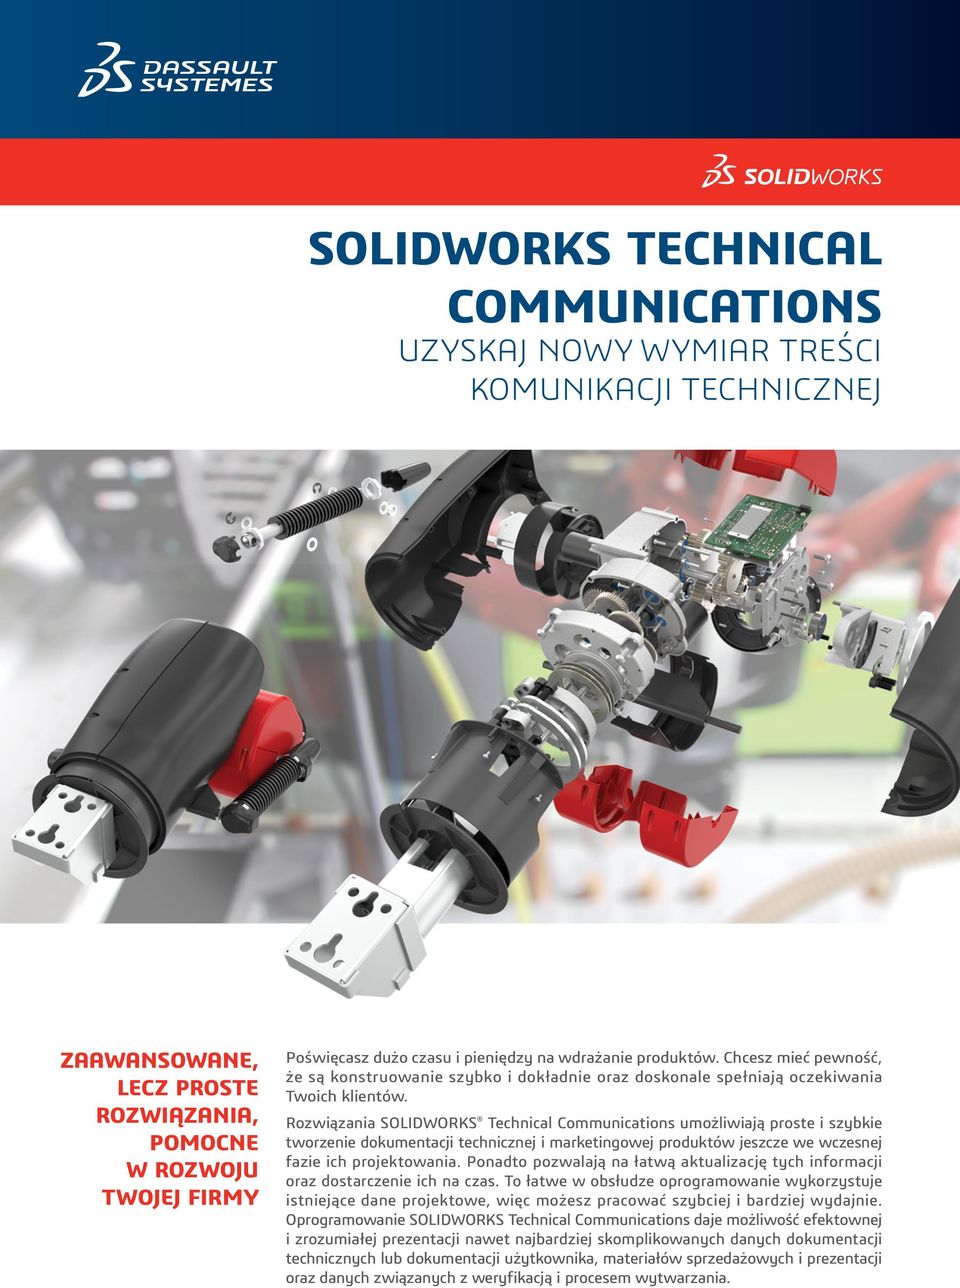 Rozwiązania SOLIDWORKS Technical Communications umożliwiają proste i szybkie tworzenie dokumentacji technicznej i marketingowej produktów jeszcze we wczesnej fazie ich projektowania.